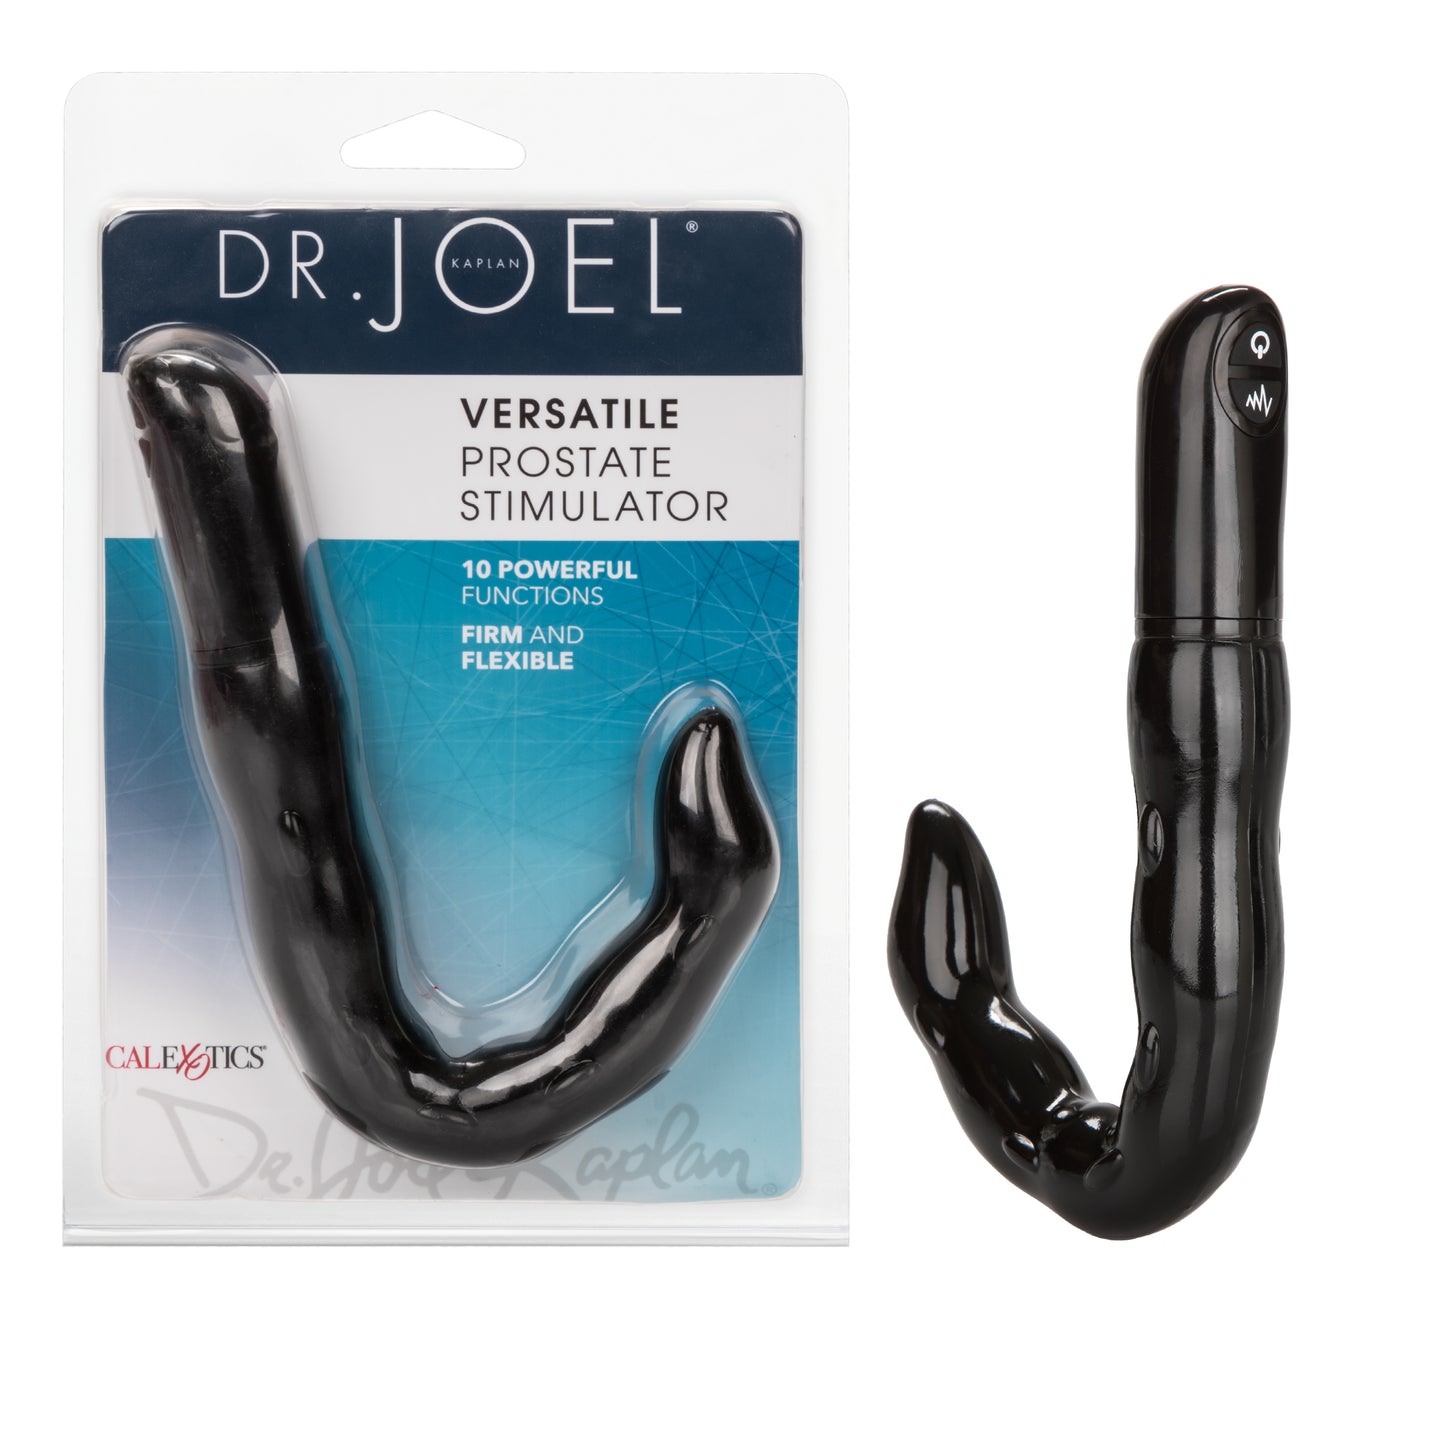 Dr. Joel Kaplan® Versatile Prostate Stimulator